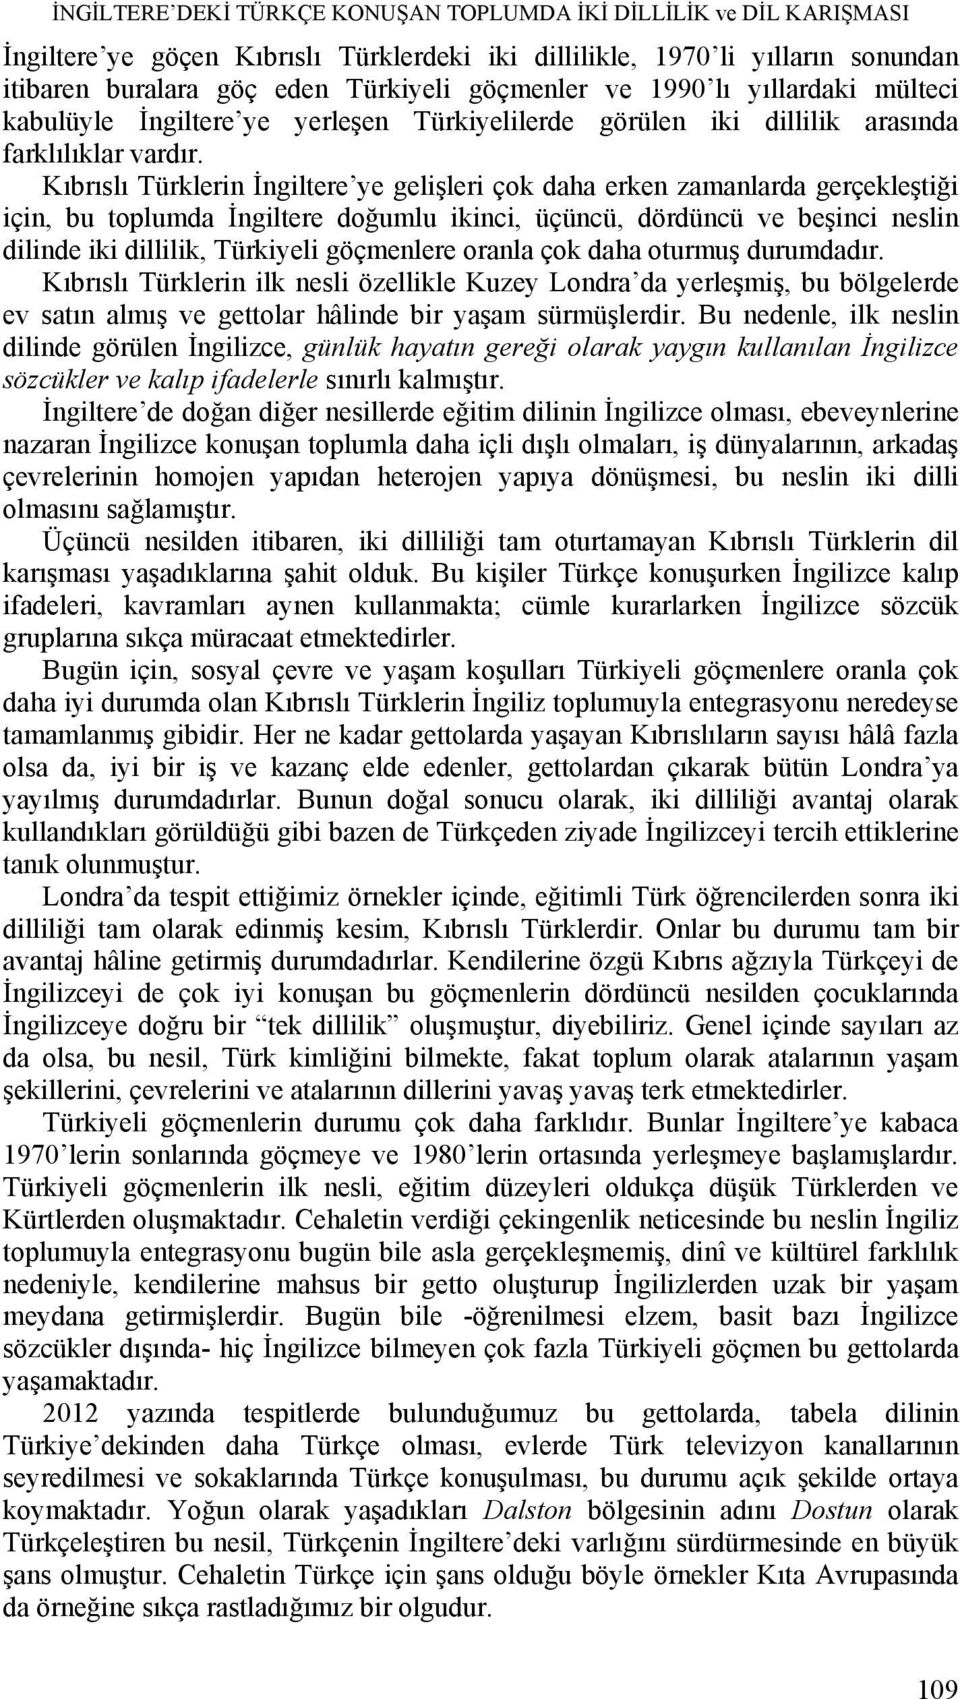 Kıbrıslı Türklerin İngiltere ye gelişleri çok daha erken zamanlarda gerçekleştiği için, bu toplumda İngiltere doğumlu ikinci, üçüncü, dördüncü ve beşinci neslin dilinde iki dillilik, Türkiyeli